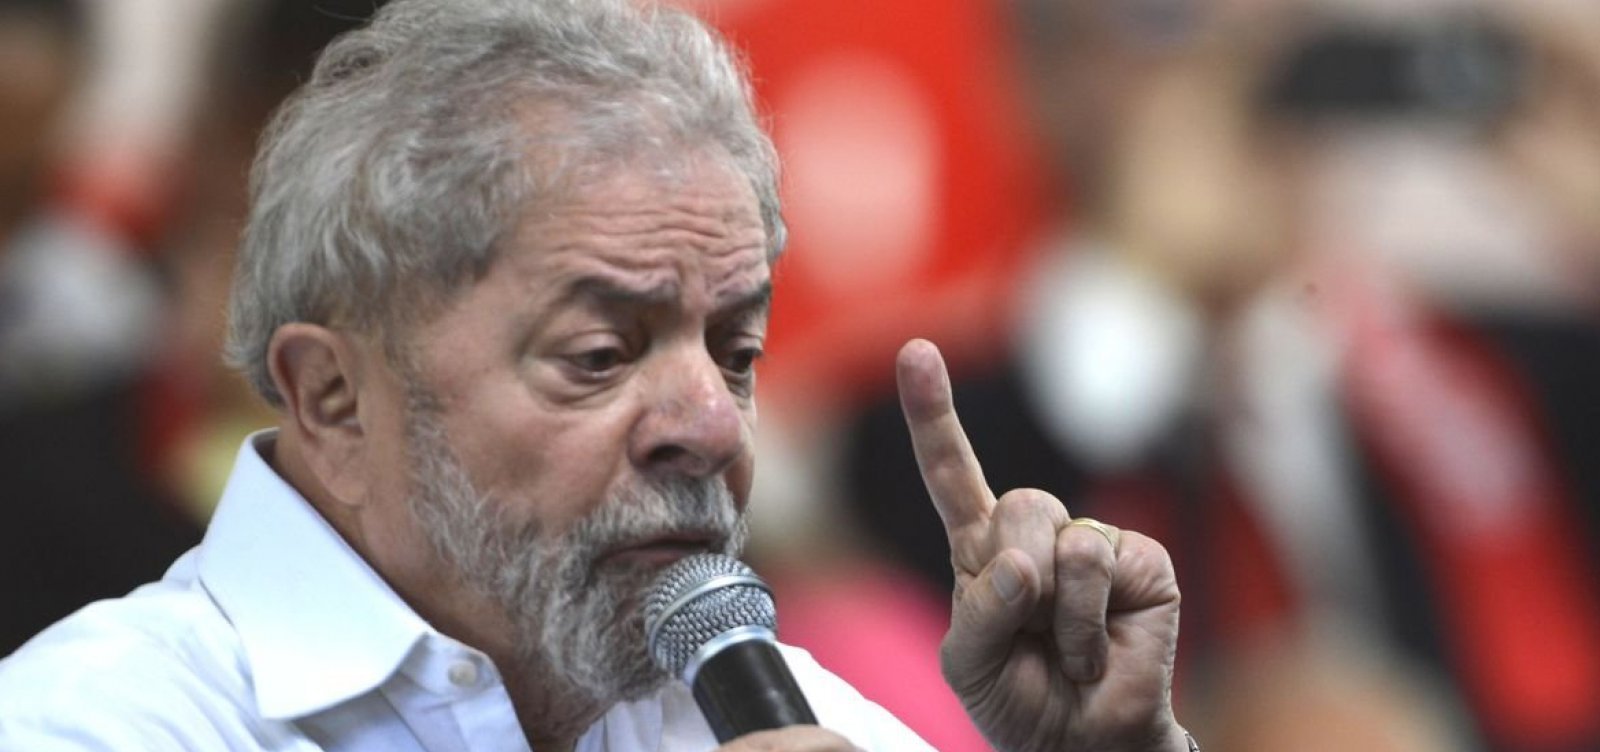 Vídeo em que homem diz que vai suspender marmitas a eleitora de Lula viraliza; ex-presidente se manifesta